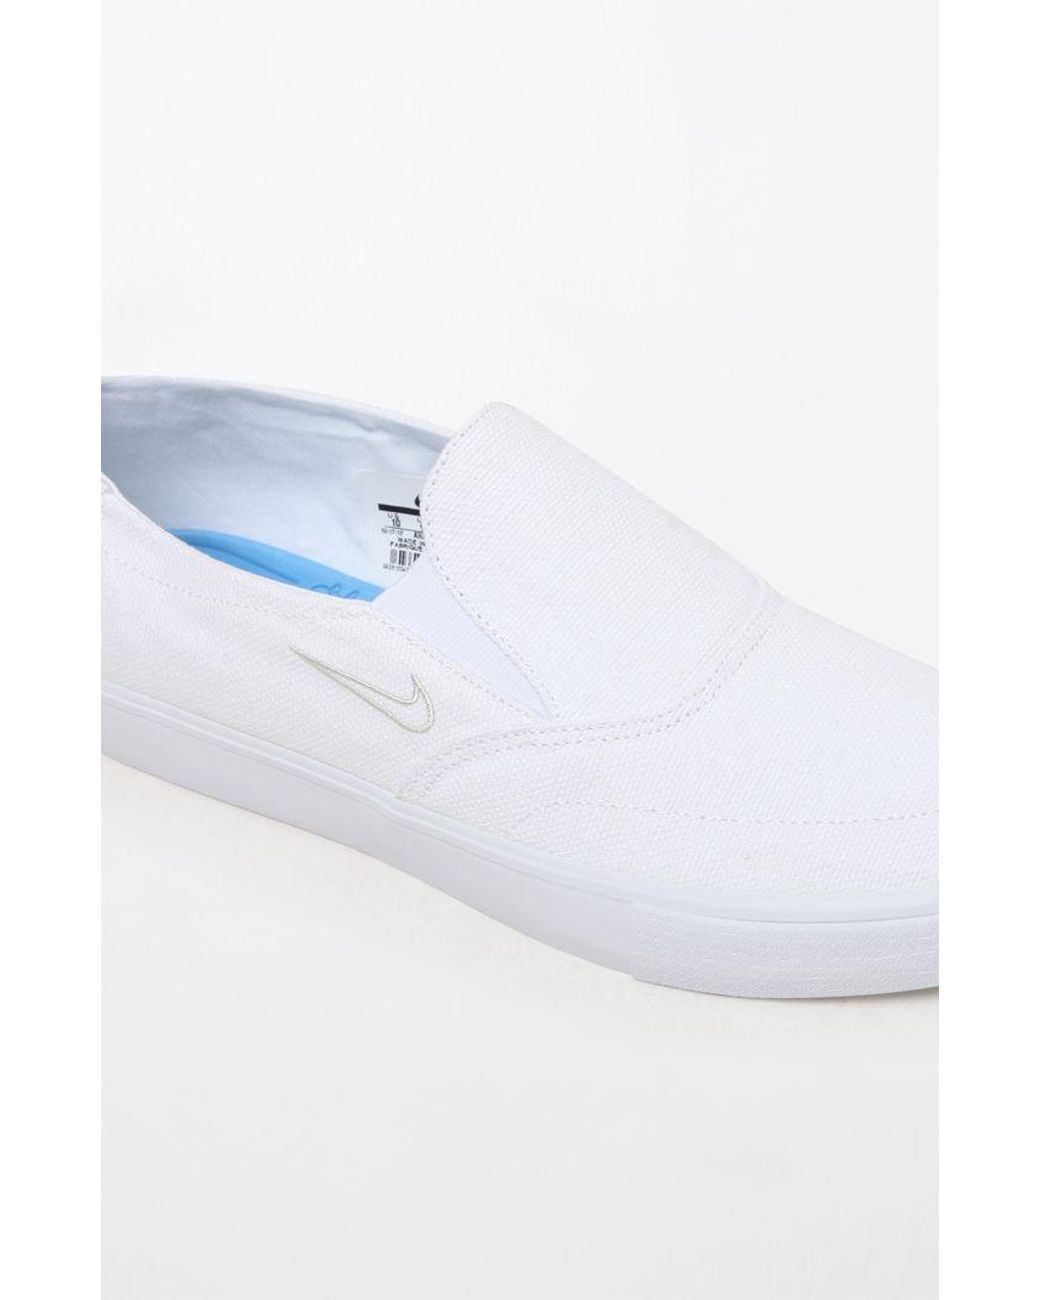 Nike Rubber Zoom Stefan Janoski Slip-on White Shoes for Men | Lyst